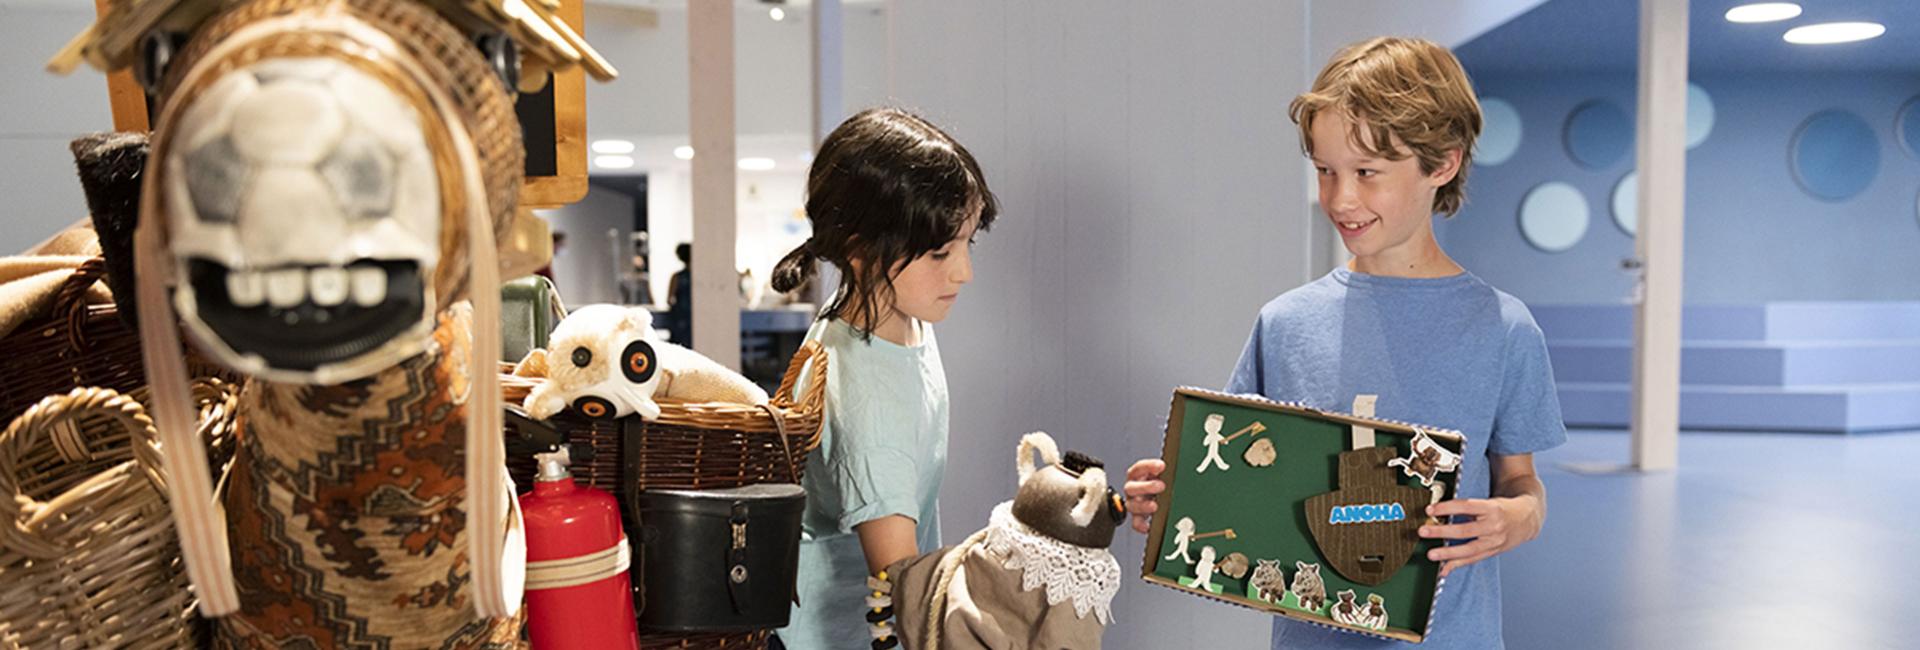 Zwei Kinder stehen einander zugewandt, eines mit einer Handpuppe und eines mit einem Diorama in der Hand.